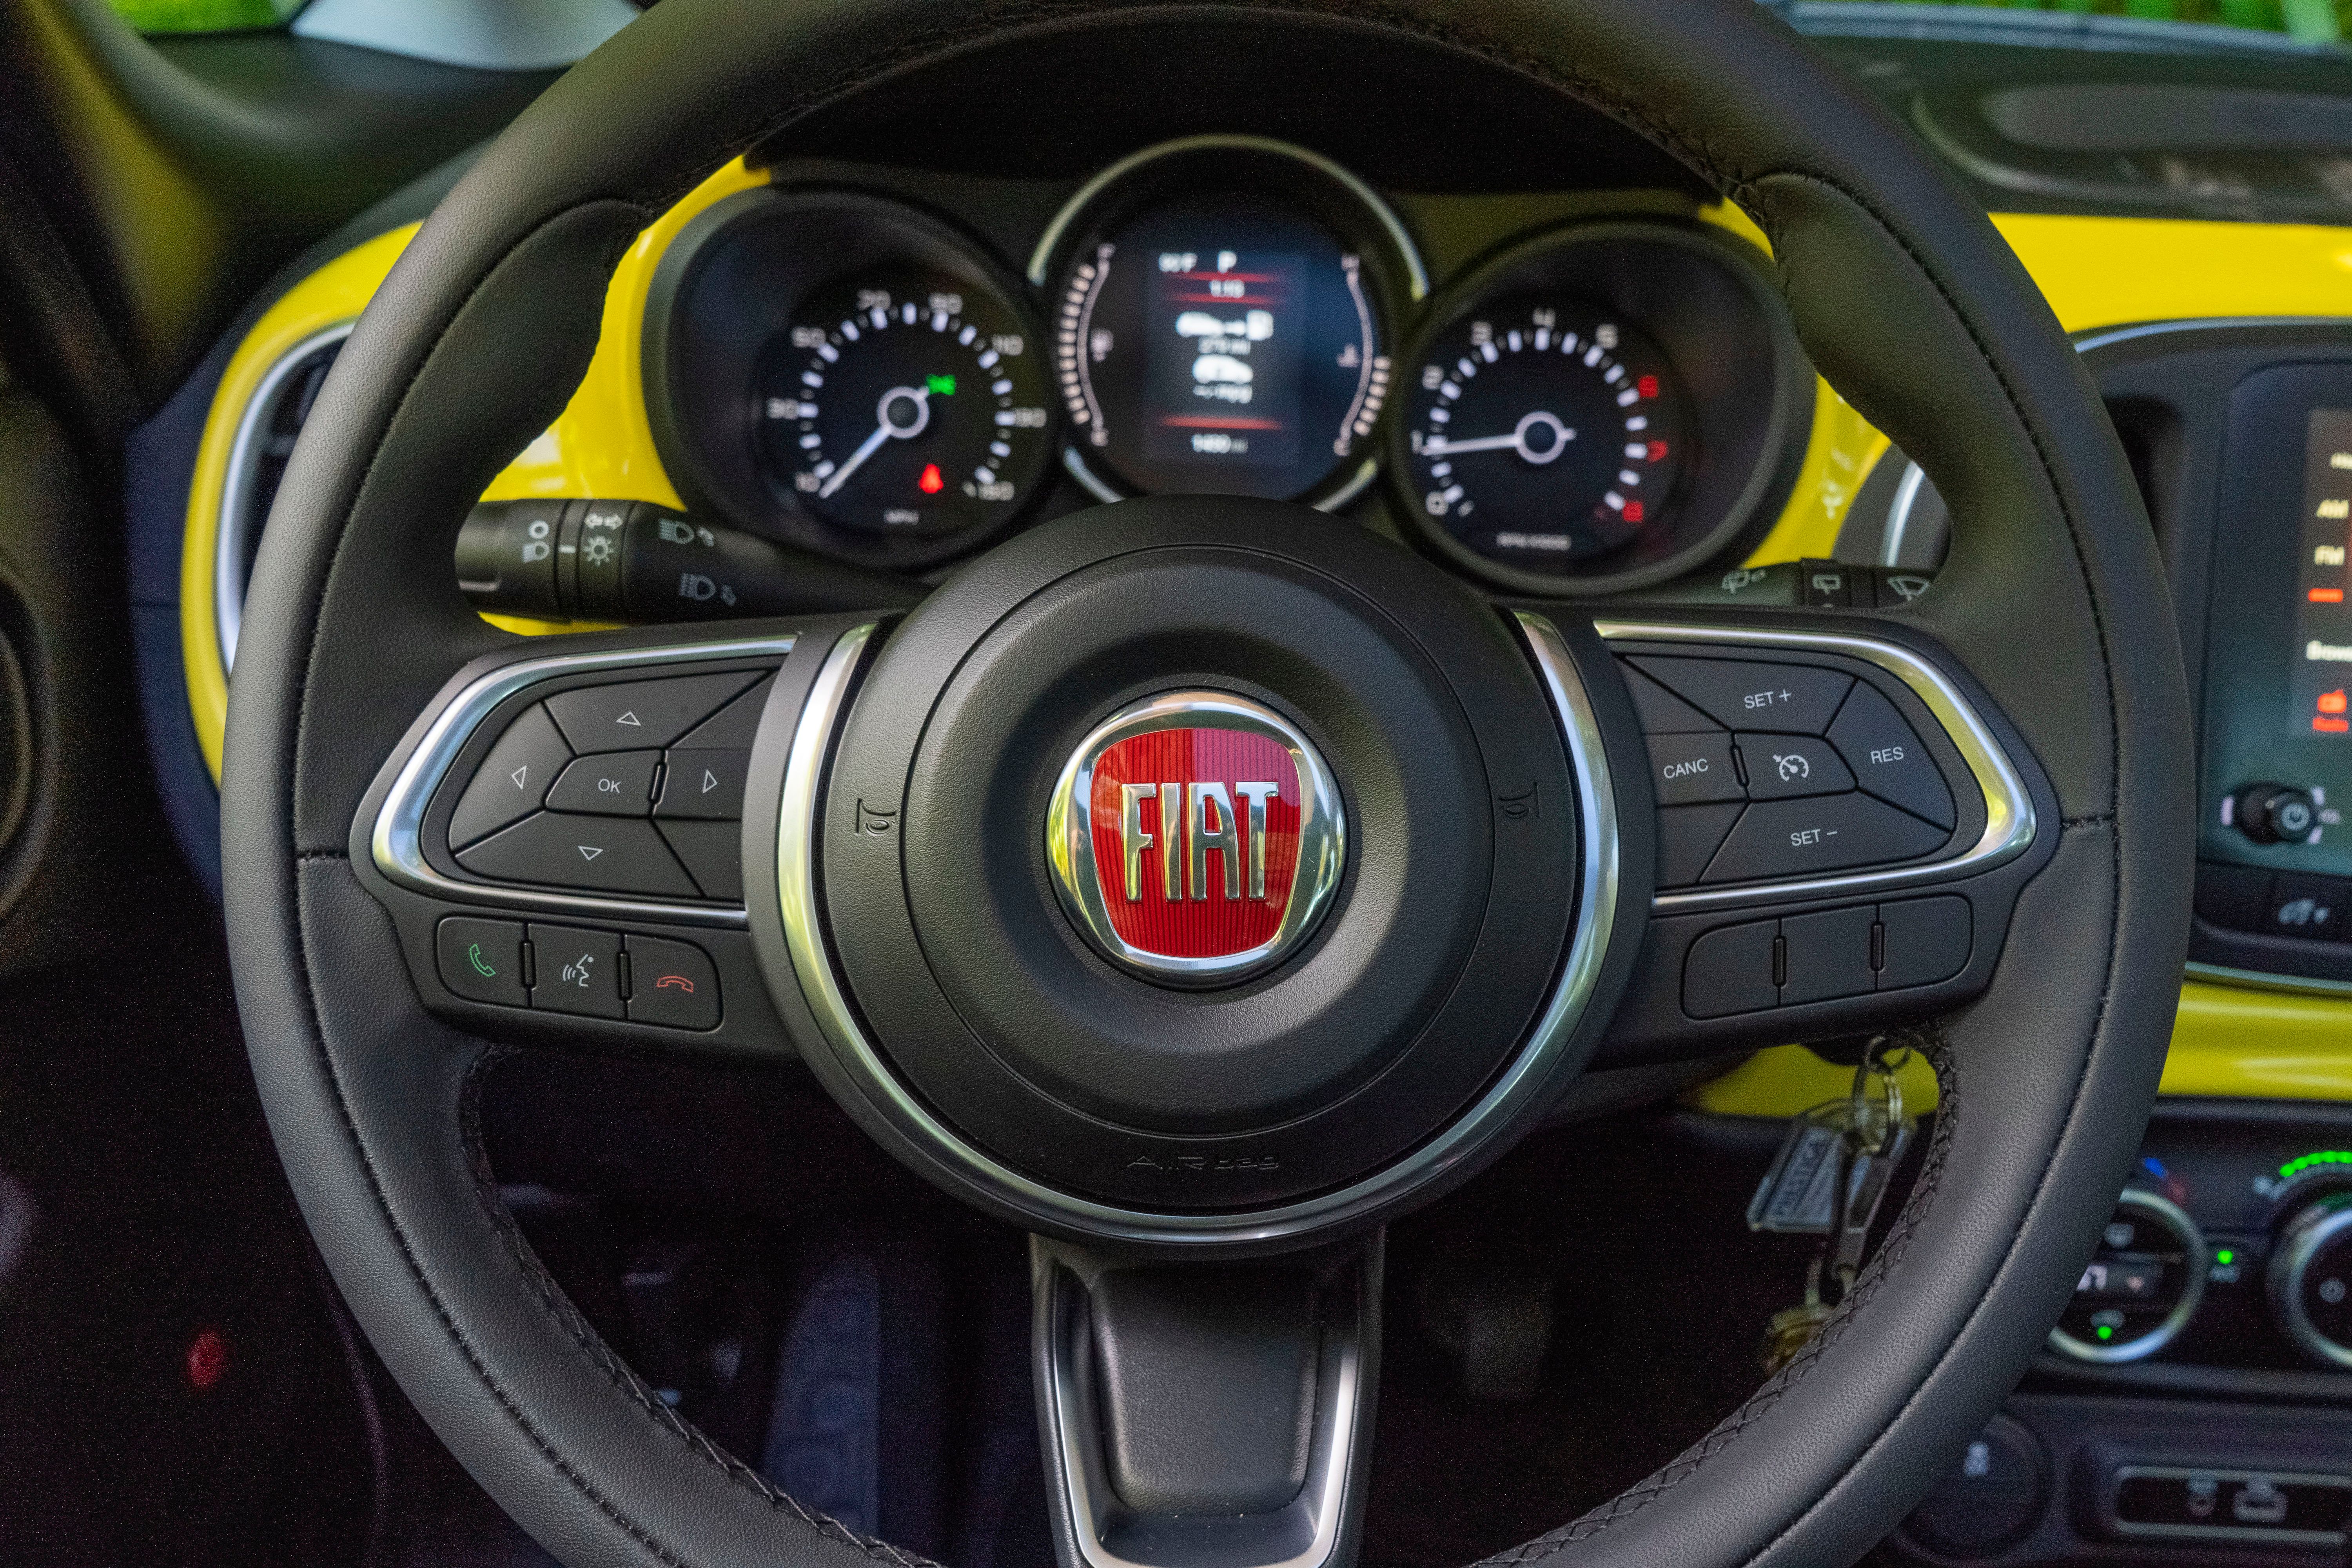 2019 Fiat 500 L - Driven